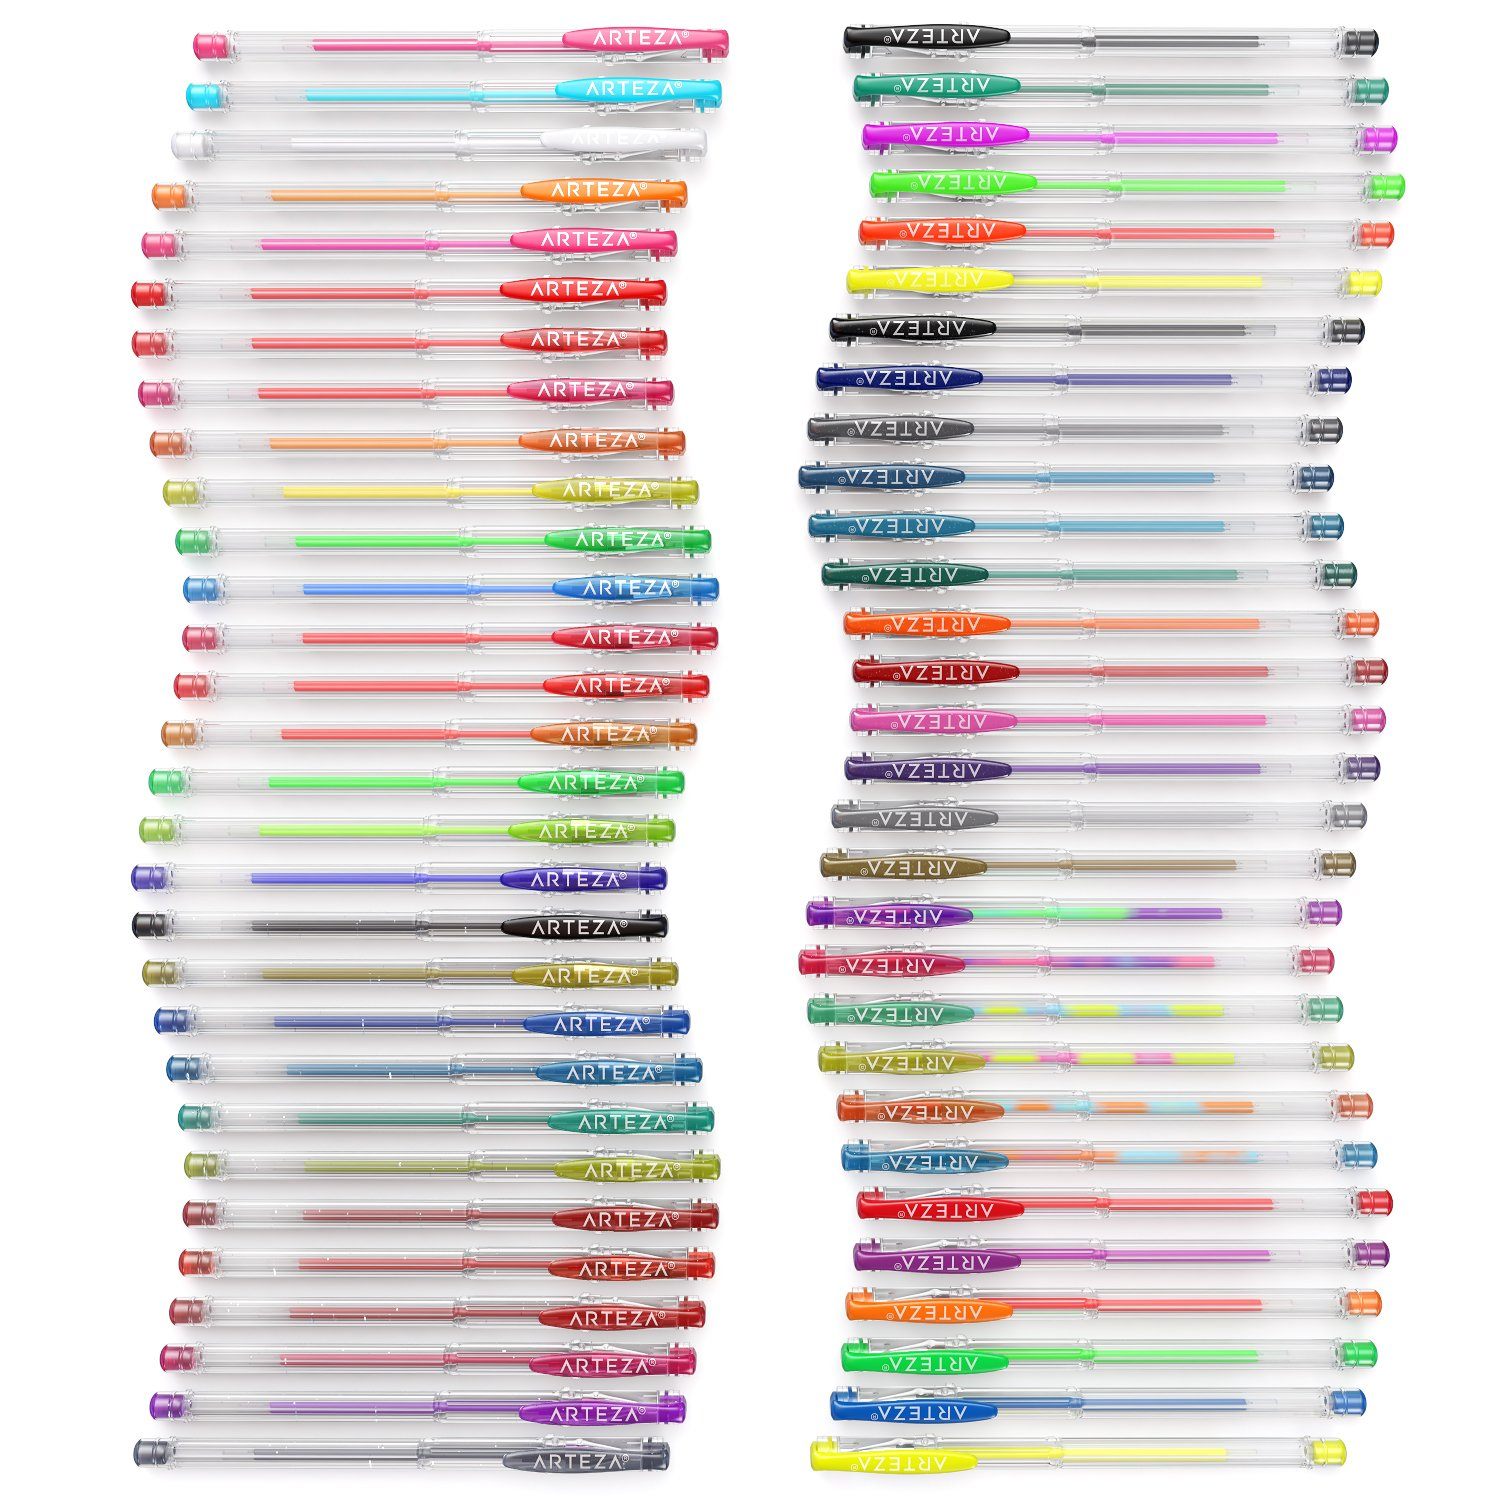  VaOlA ART Colored Gel Pens - Sets of 24 Gel Pens and